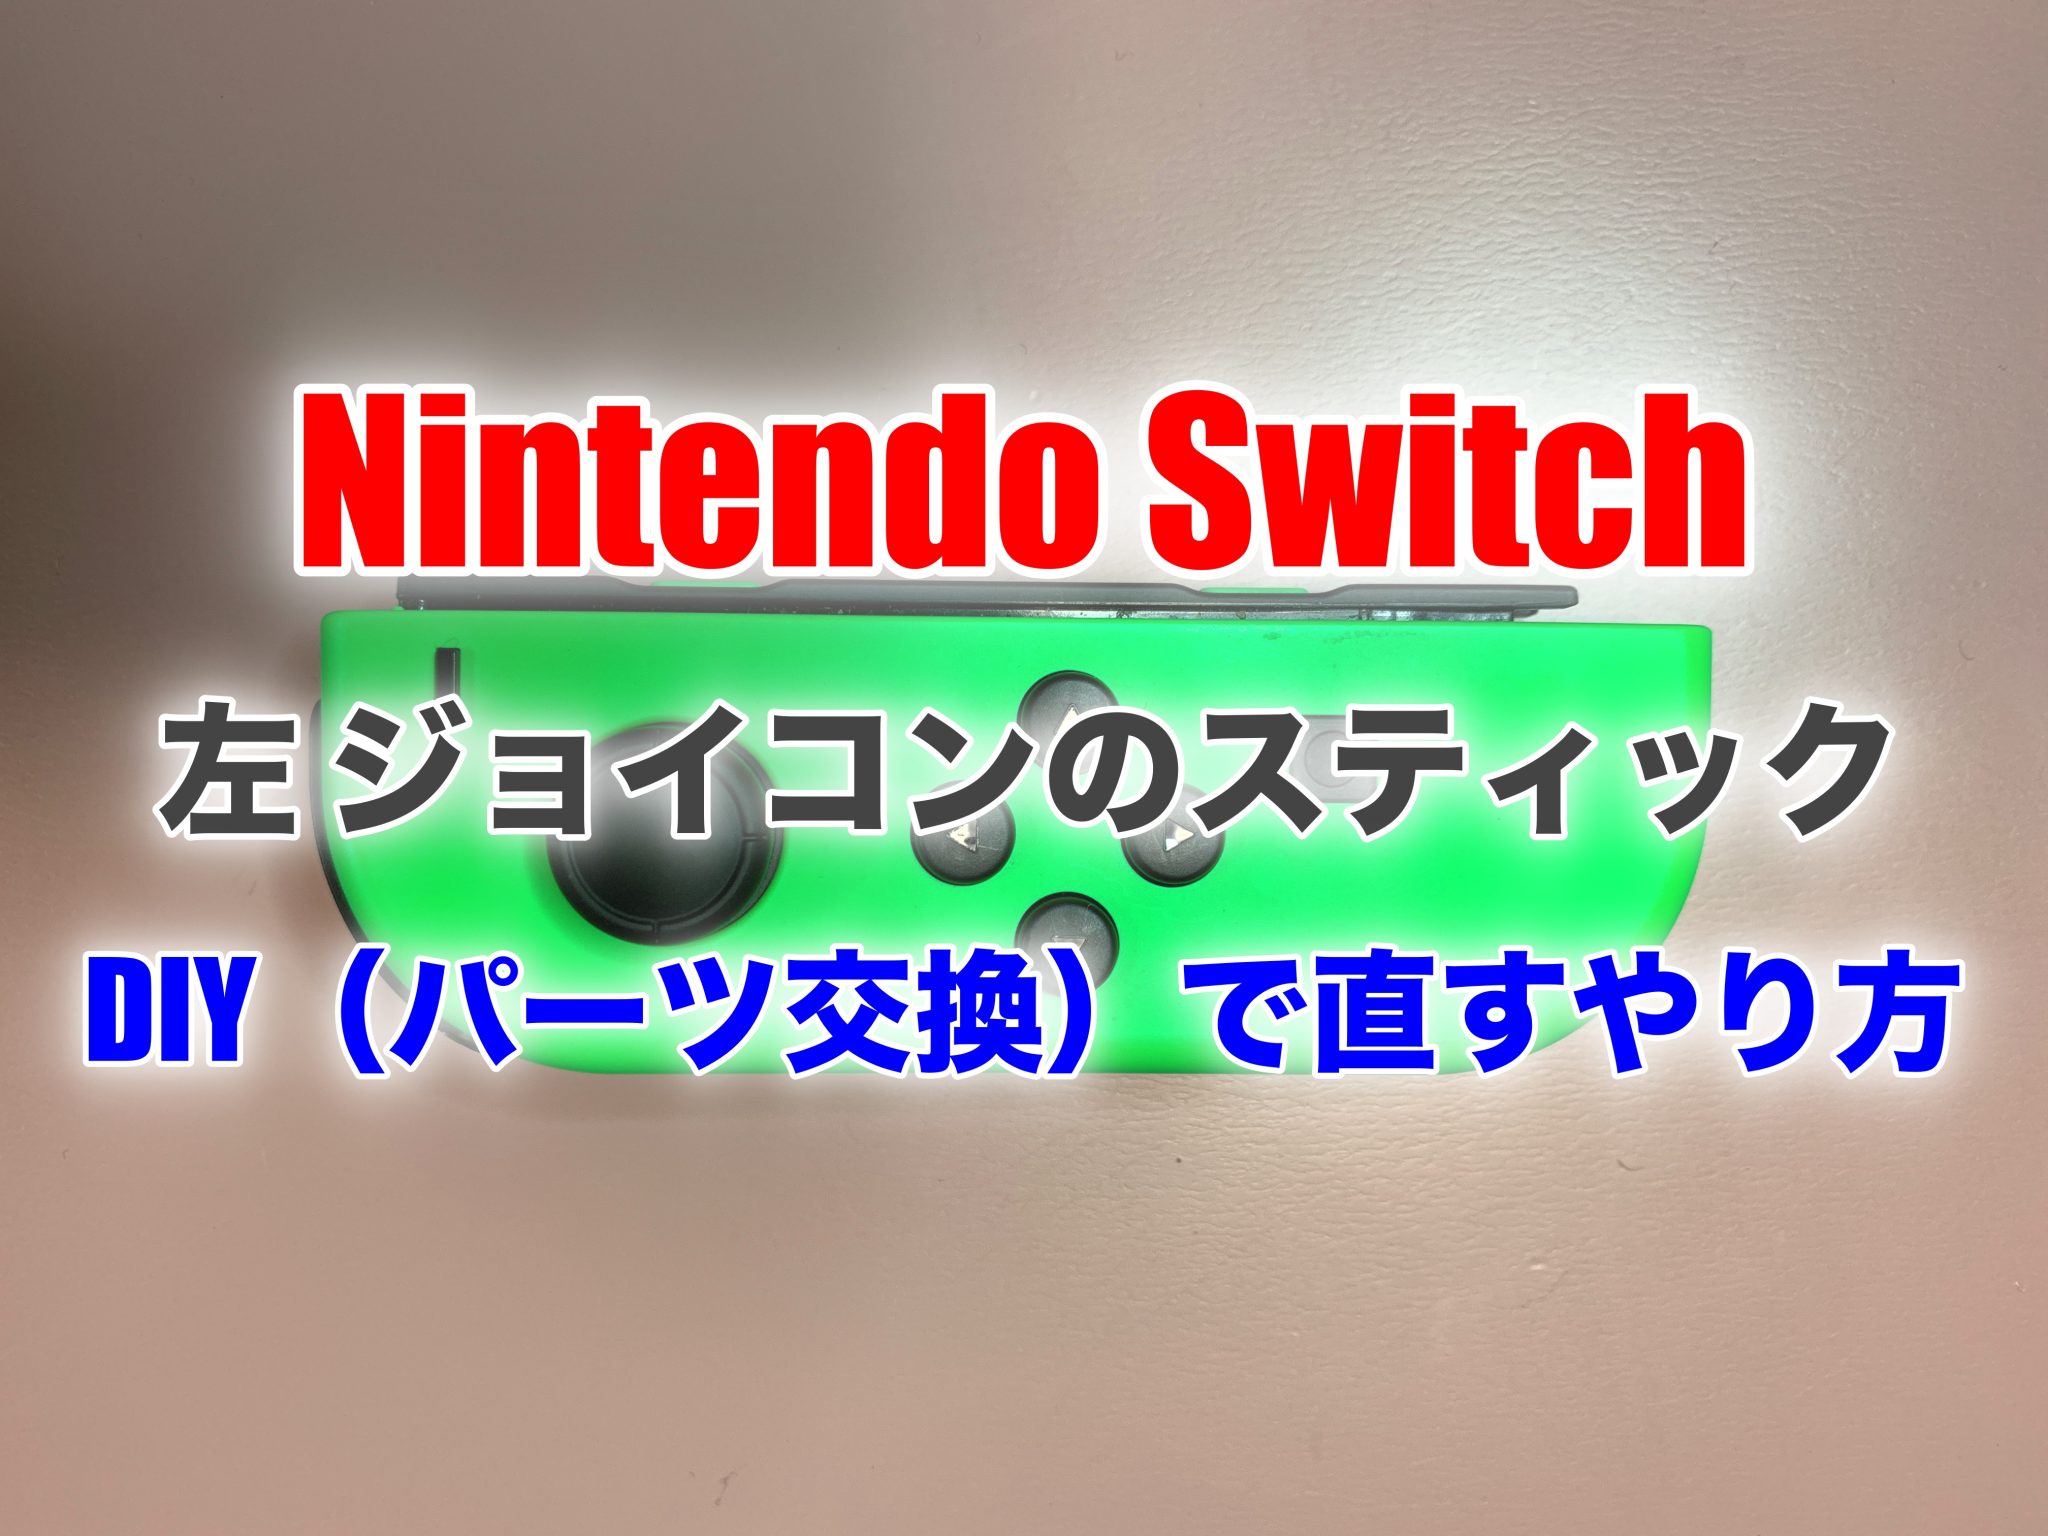 Nintendo Switchのジョイコン（左）が勝手に動く、反応が悪い、壊れた！これをDIY（自力で）で修理する（パーツ交換）やり方！ |  センスさんのブログ